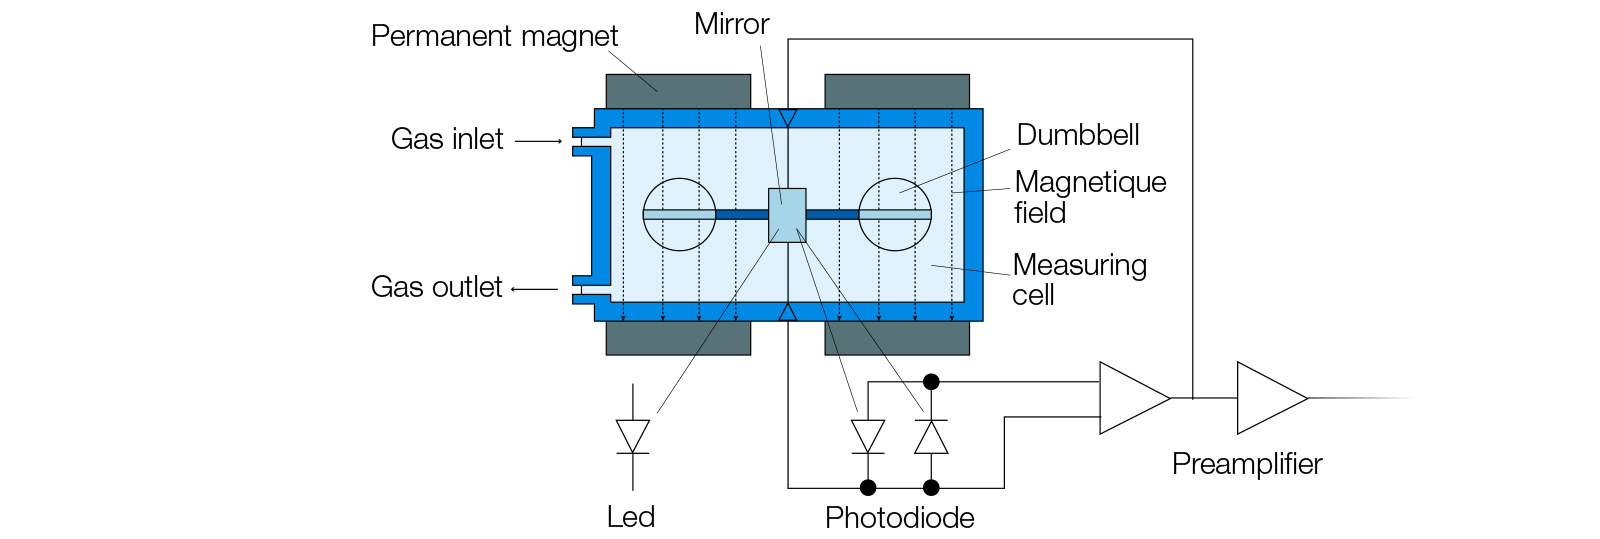 analizzatore-ossigeno-paramagnetico-un-rilevamento-optico-schema-en